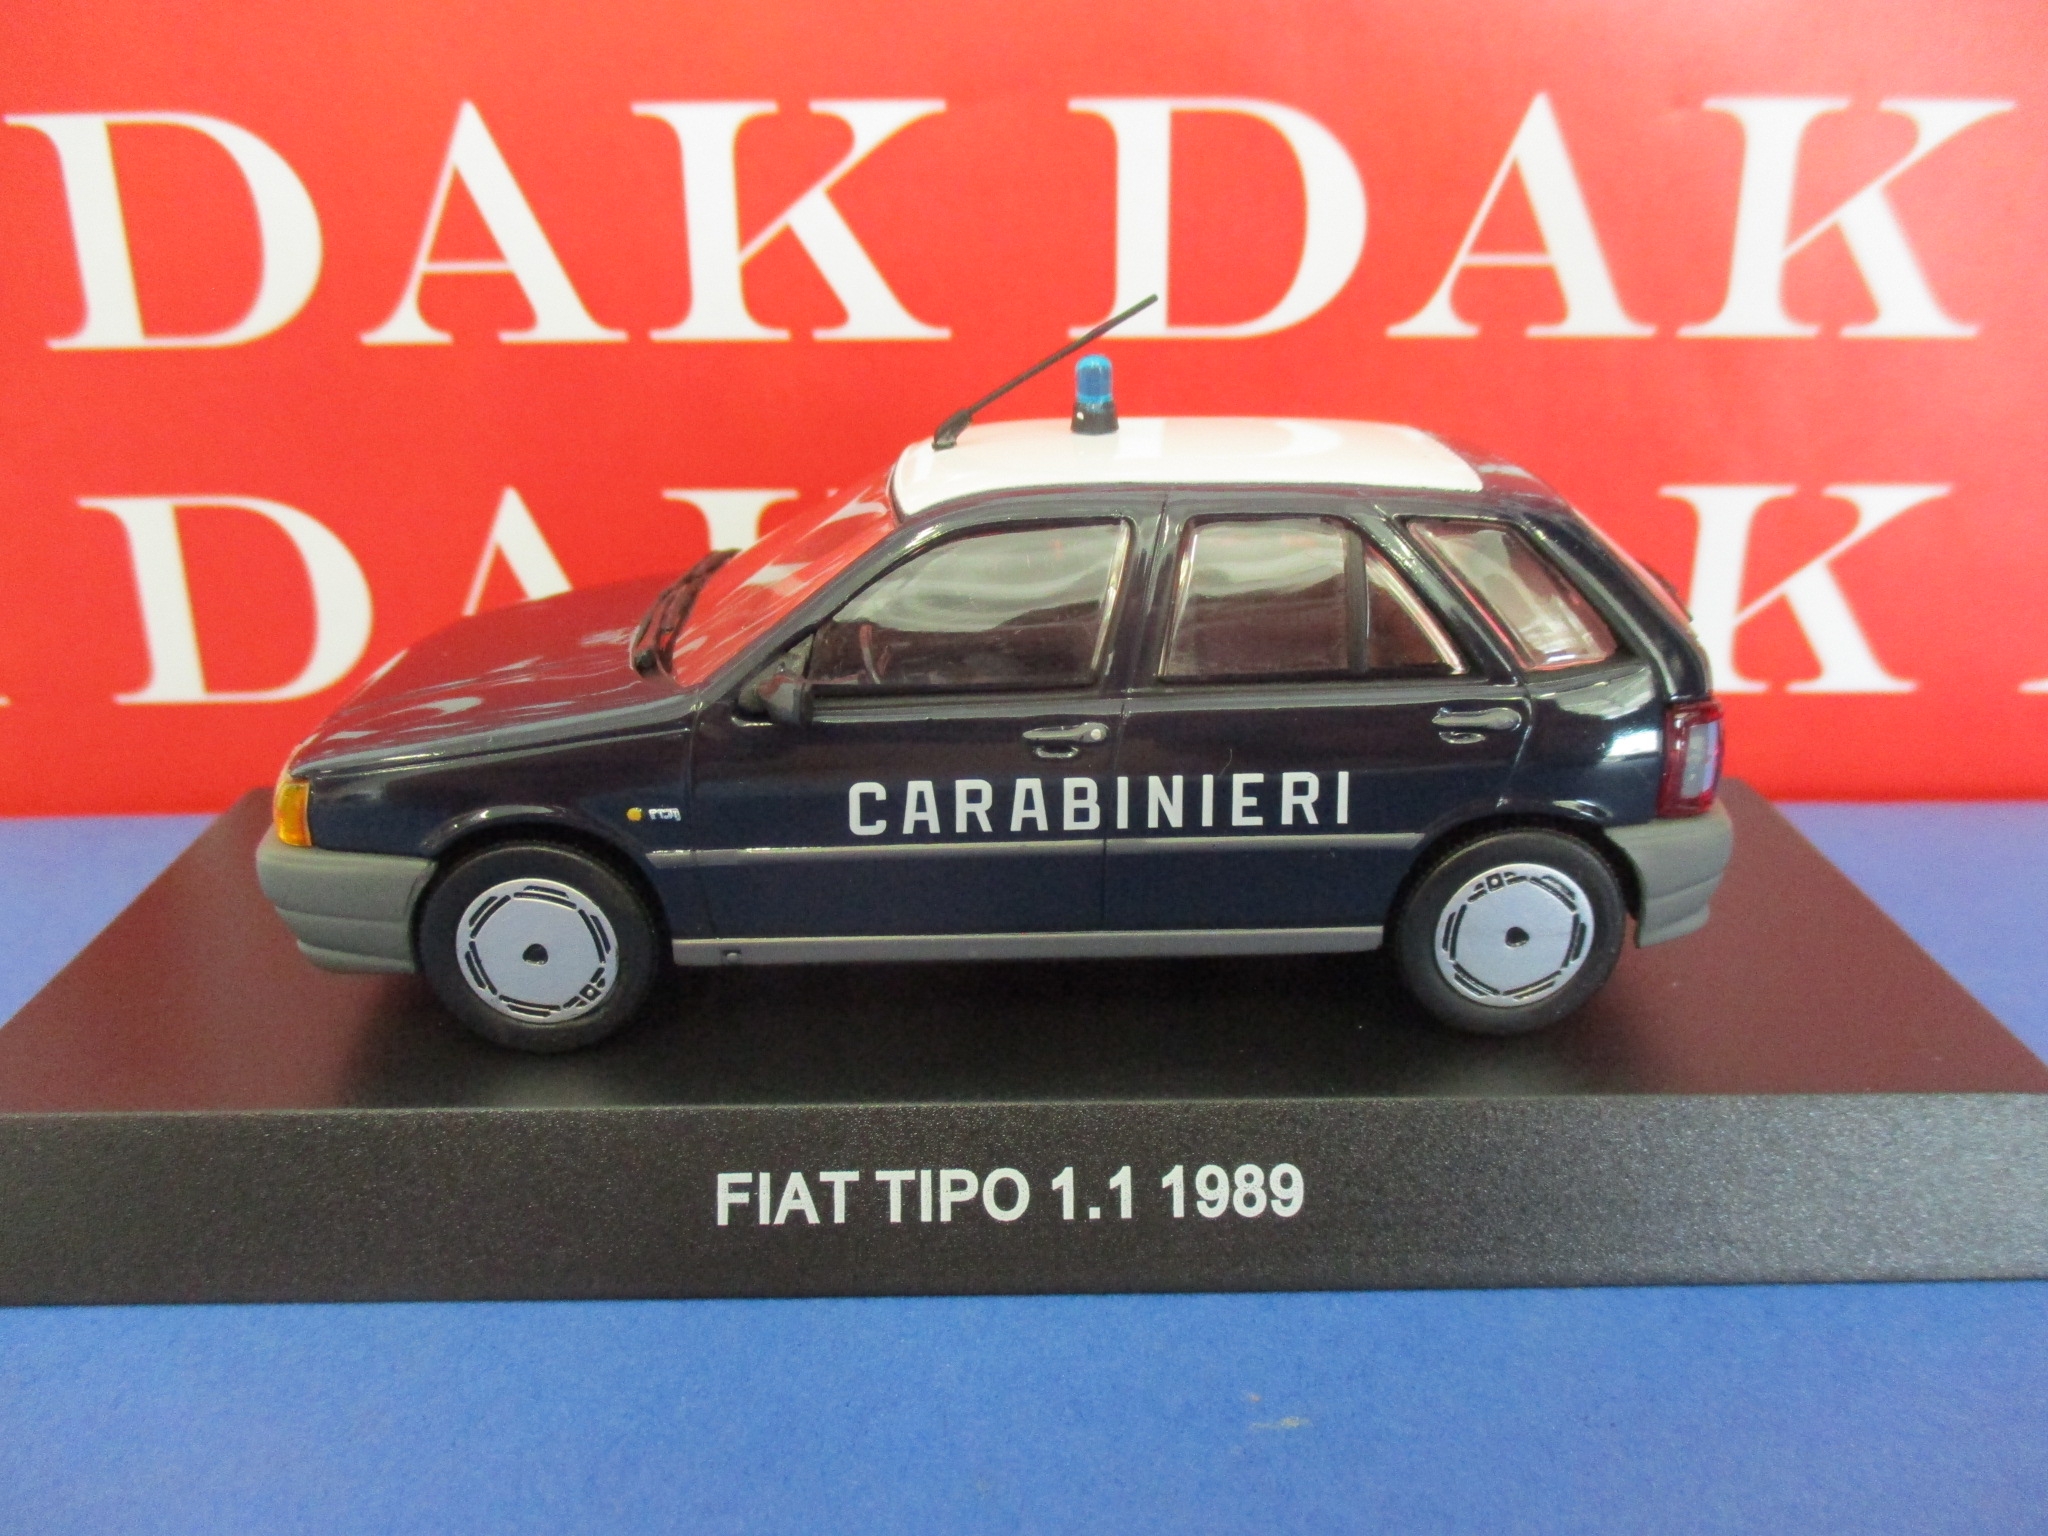 1989 Die cast 1/43 carabinieri Fiat Tipo 1.1 car model